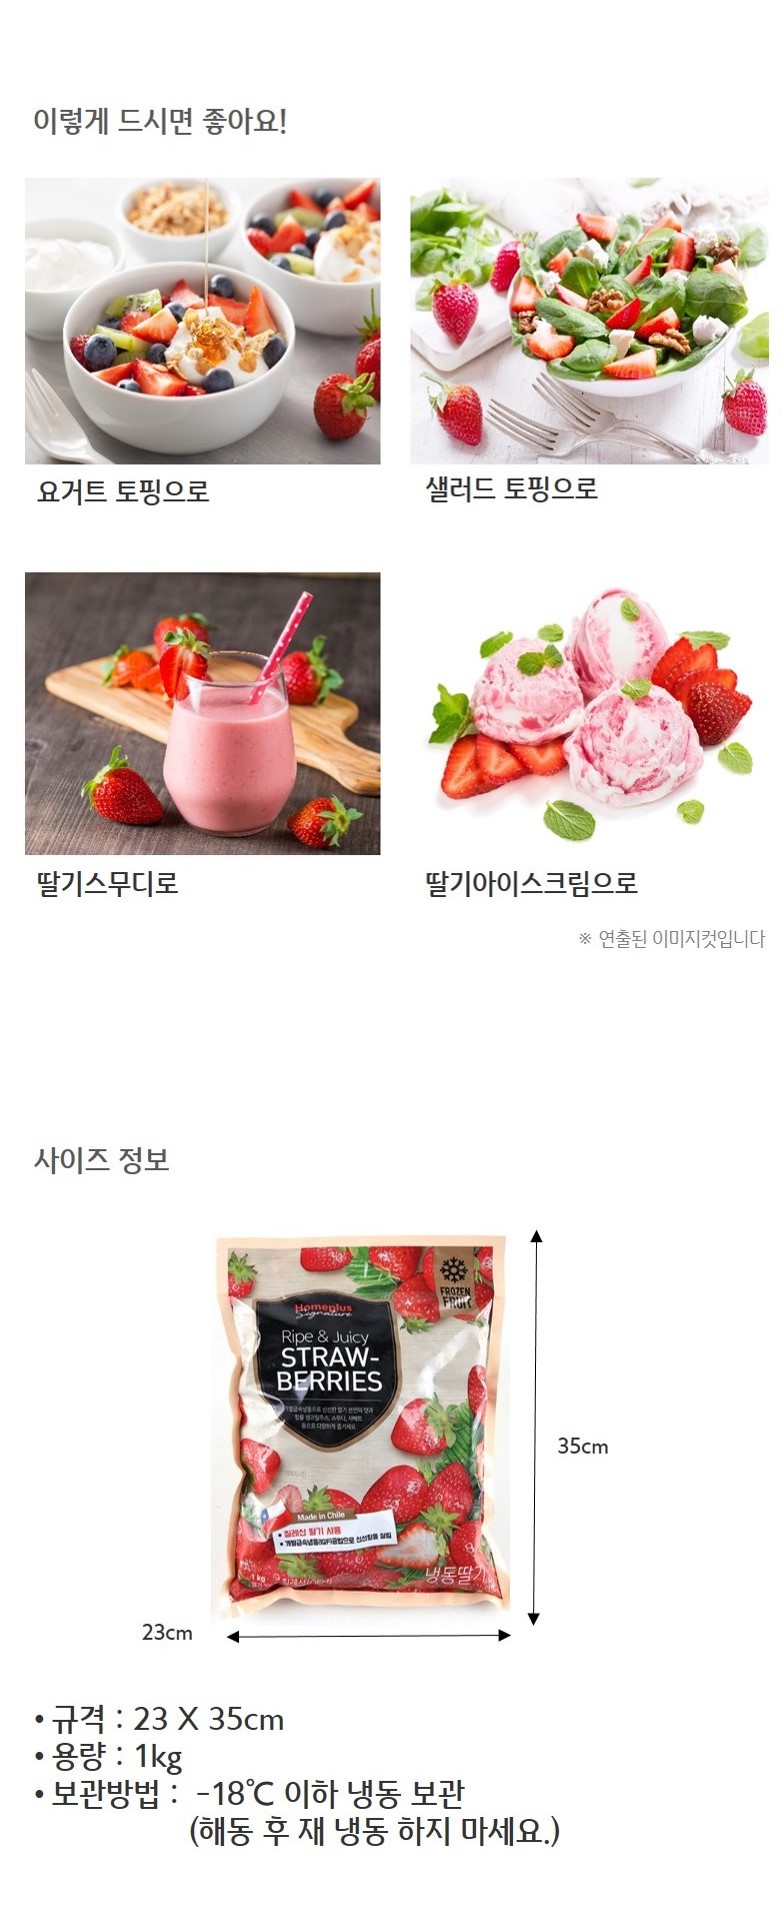 韓國食品-[홈플러스시그니처] 냉동 딸기 1KG